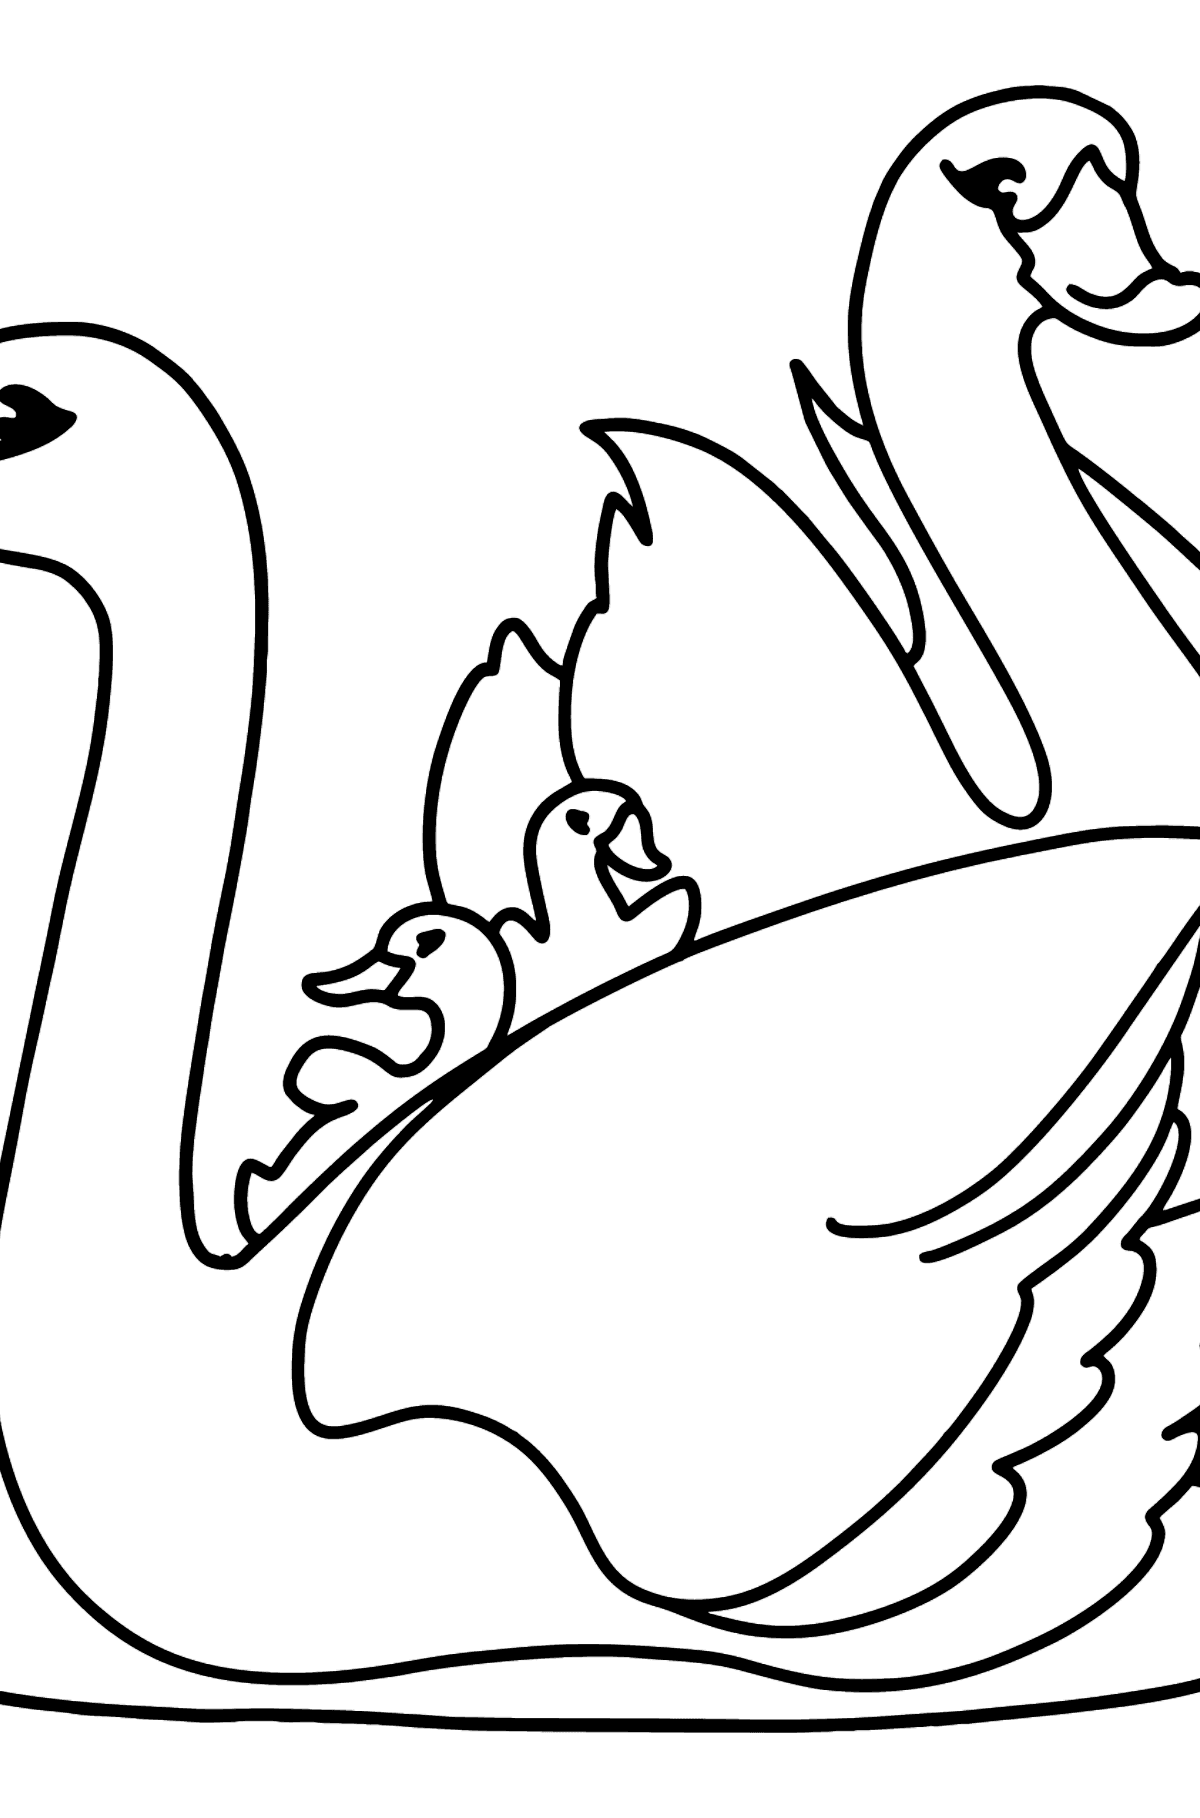 Hvite svaner tegning til fargelegging - Tegninger til fargelegging for barn